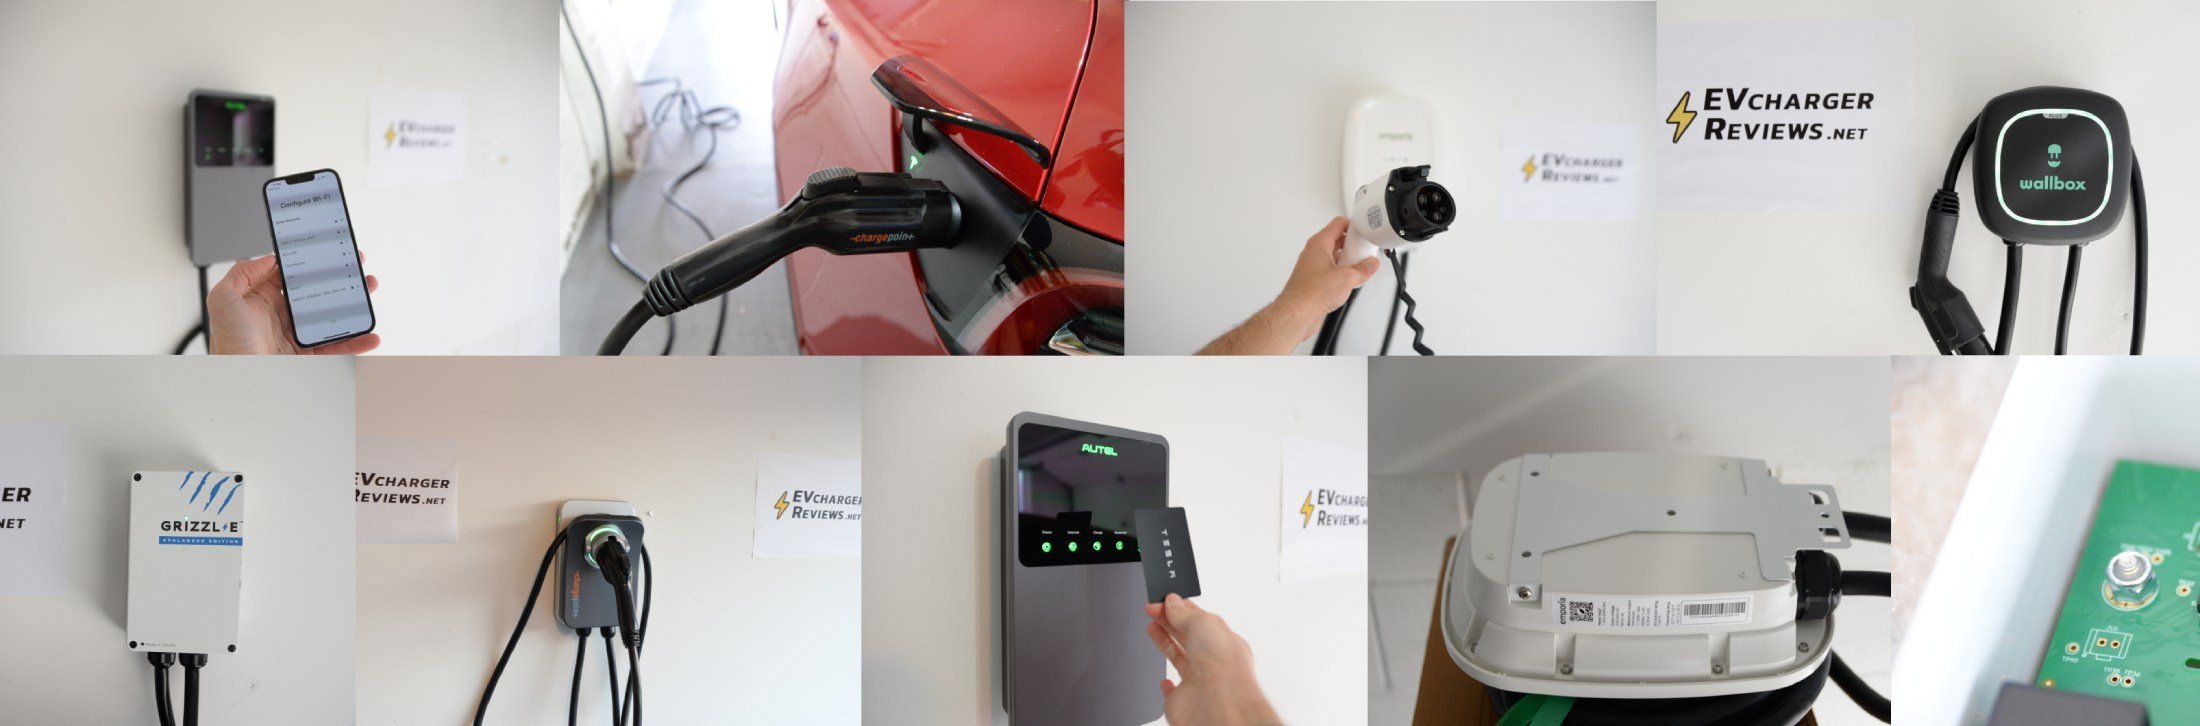 Testing home EV charging stations for the Tesla Model 3